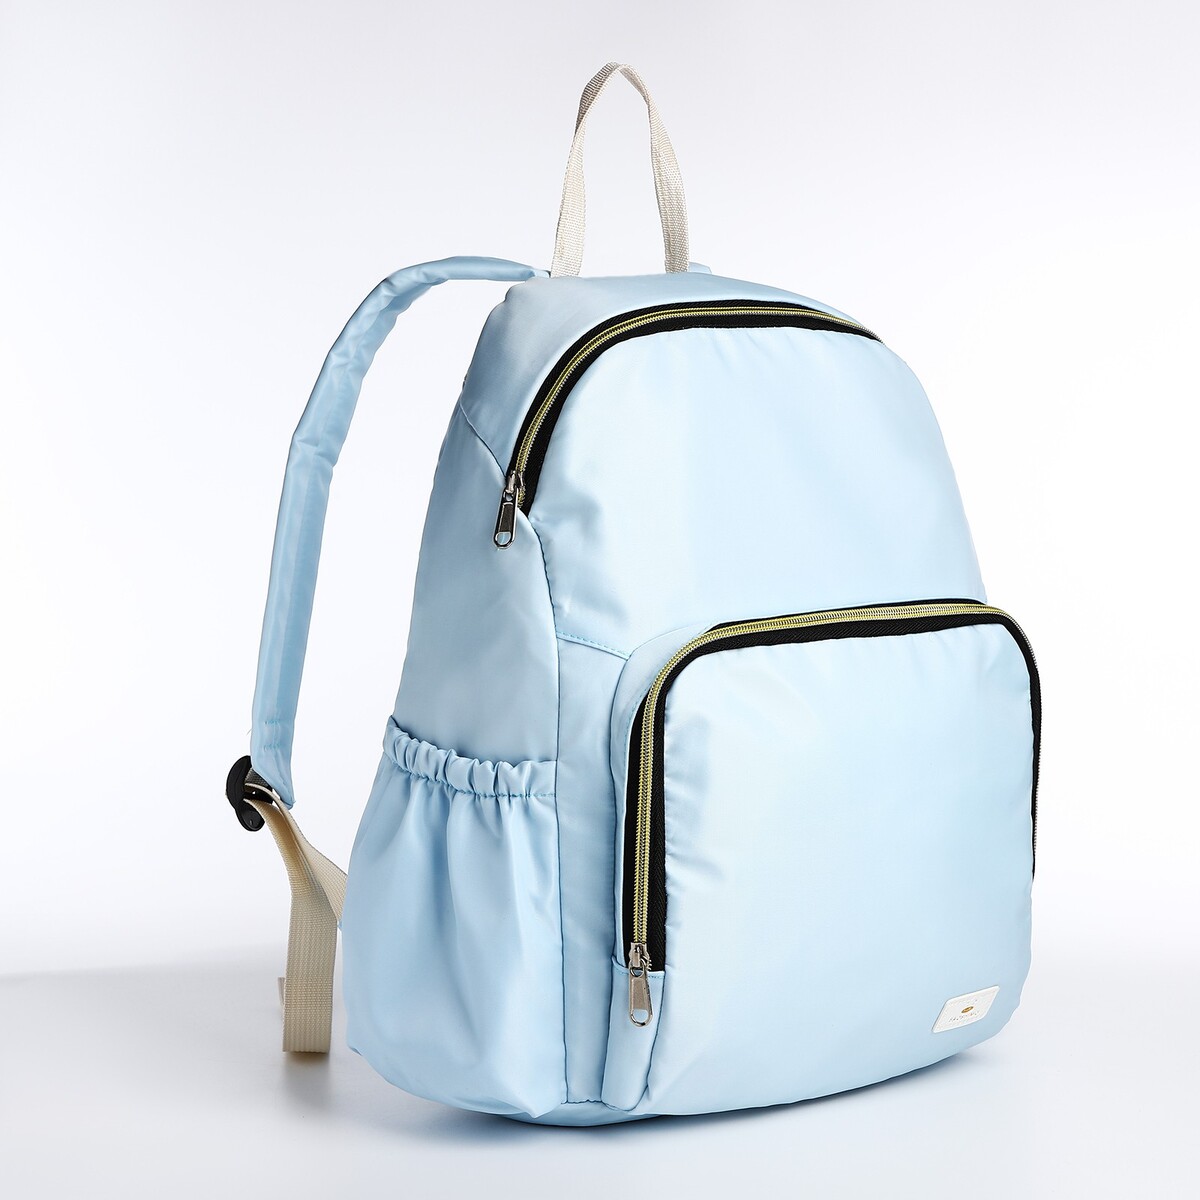 Рюкзак на молнии, цвет голубой рюкзак kingkong i 30 wb 9064 черн средний фоторюкзак